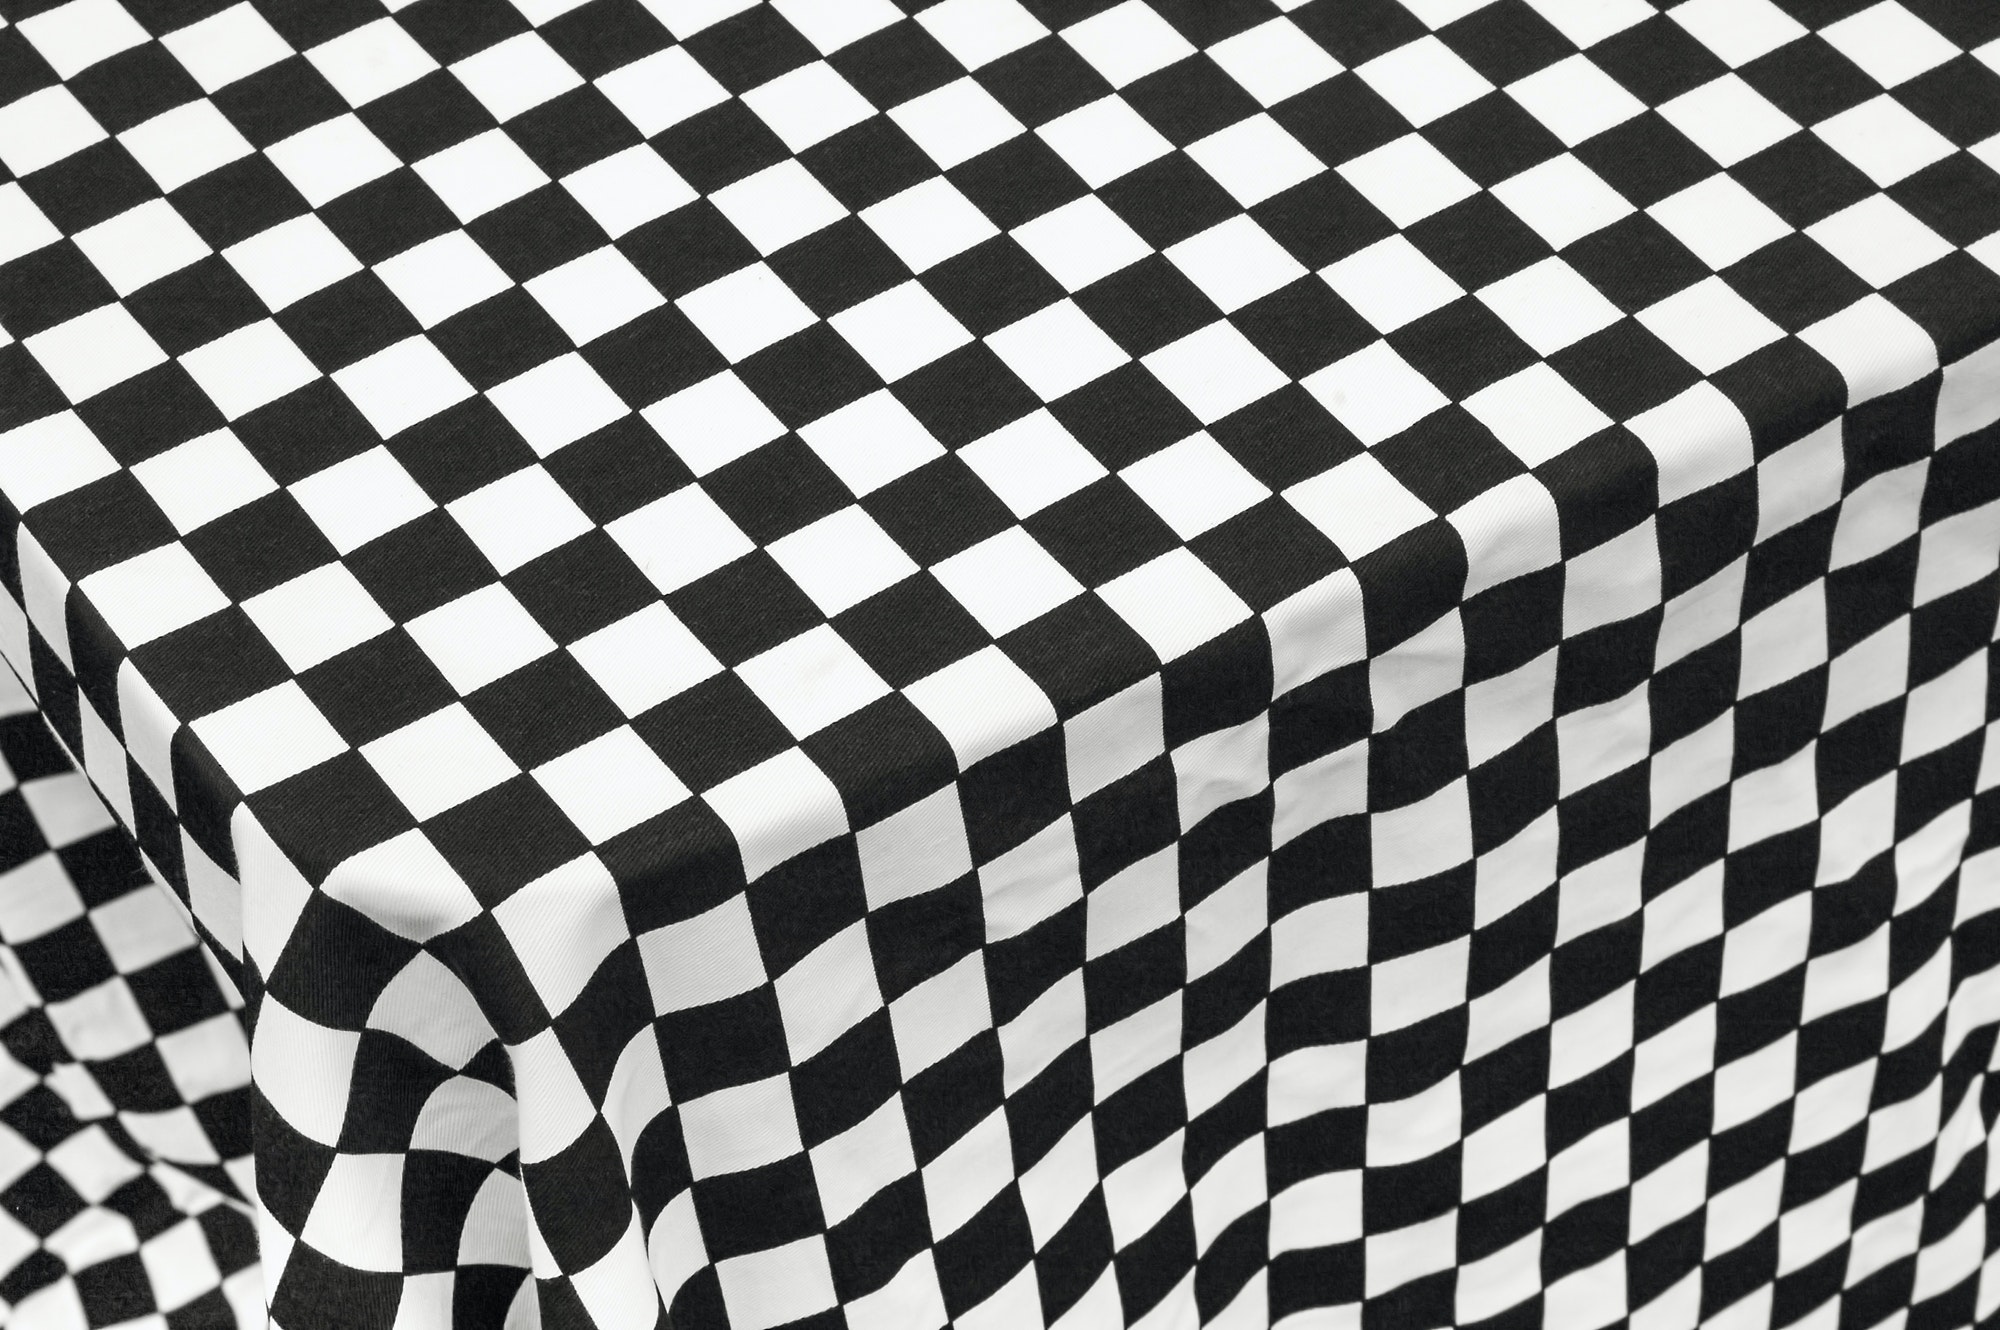 checkered tablecloth